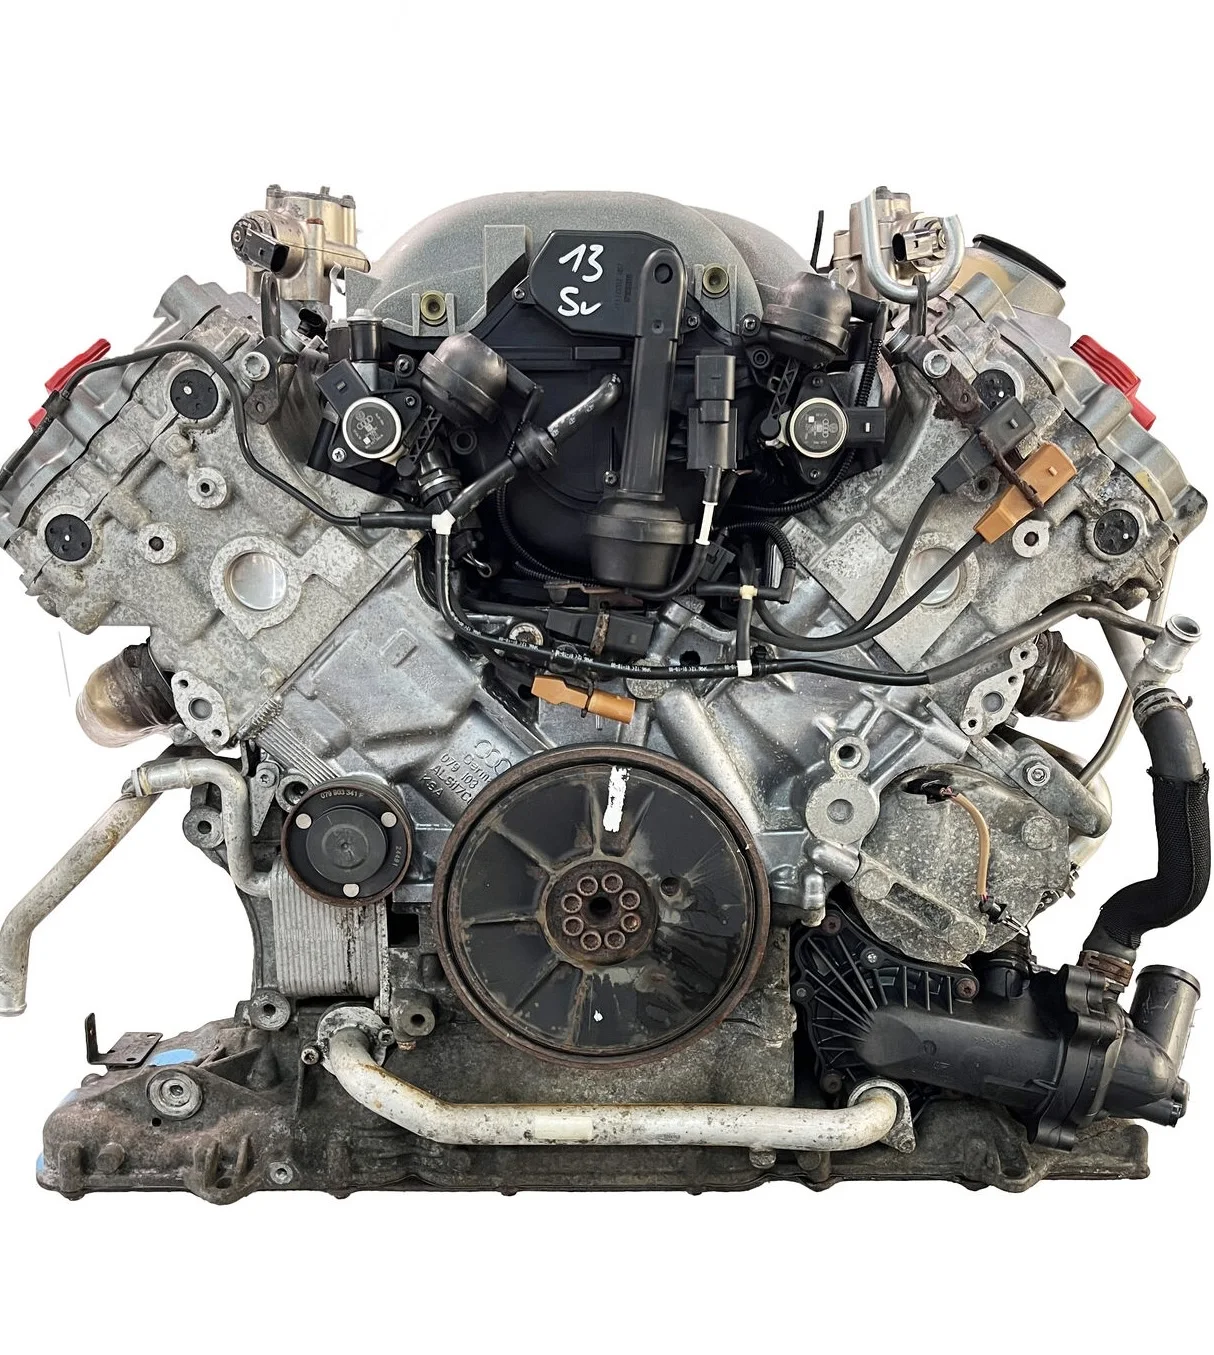 

BVJ BAR V8 Petrol Motor 350 257 Kw 4,2 FSI V8 Engine for A6 A8 Q7 AWD C6 engine Touareg 4.2 ENGINE